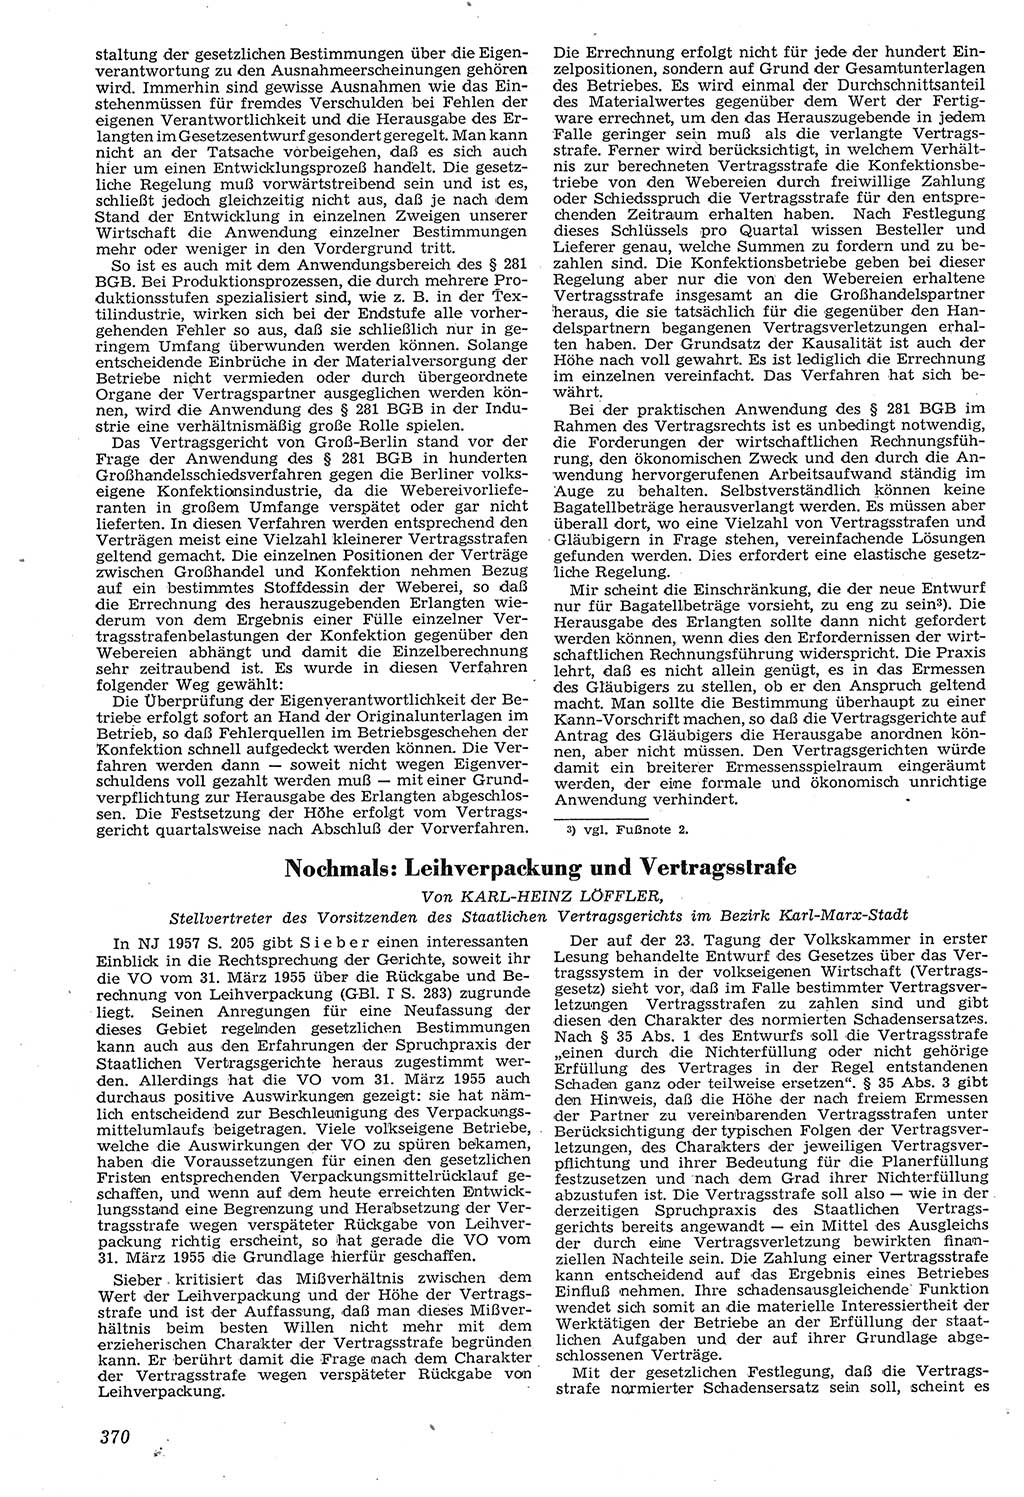 Neue Justiz (NJ), Zeitschrift für Recht und Rechtswissenschaft [Deutsche Demokratische Republik (DDR)], 11. Jahrgang 1957, Seite 370 (NJ DDR 1957, S. 370)